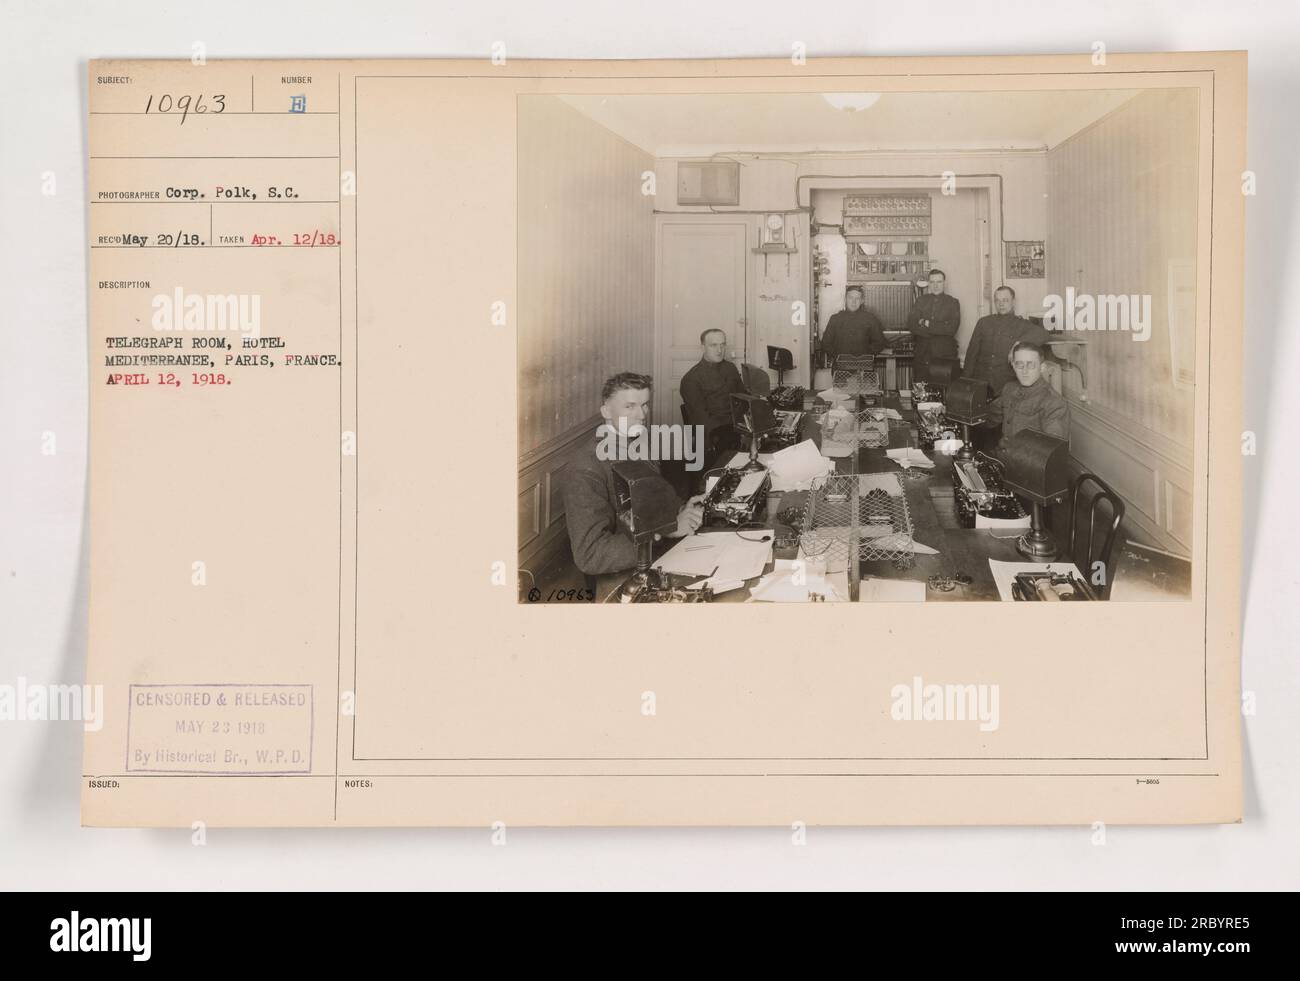 Telegraph Room im Hotel Mediterranee, Paris, Frankreich. Ausgestellt am 12. April 1918. Das Foto zeigt einen Raum, in dem Telegramme während des Ersten Weltkriegs gesendet und empfangen wurden. Zensiert und veröffentlicht am 23. Mai 1918, von Historical Branch, W.P.D. Stockfoto